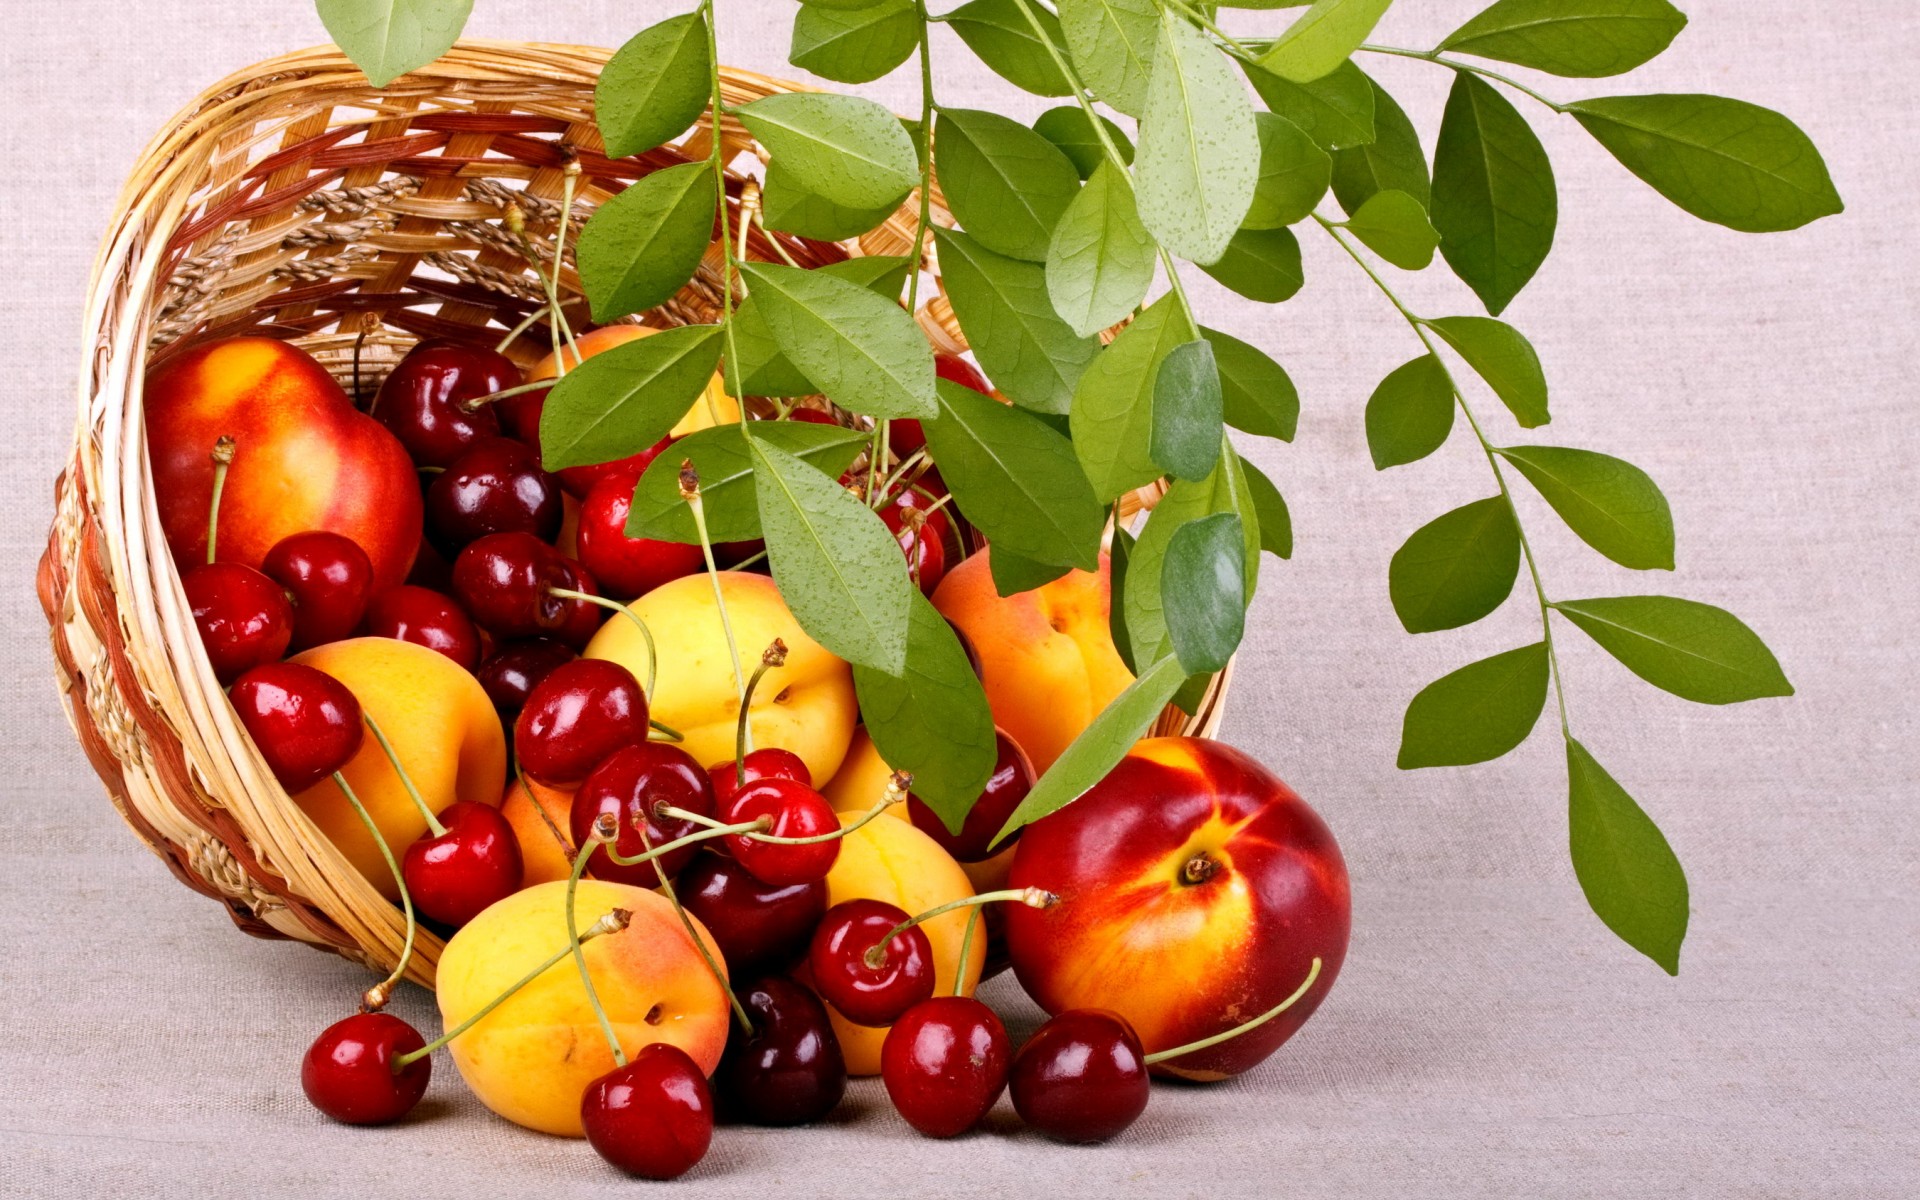 fruits, Berries, Food, Peaches, Cherries, Basket, Leaves Wallpaper